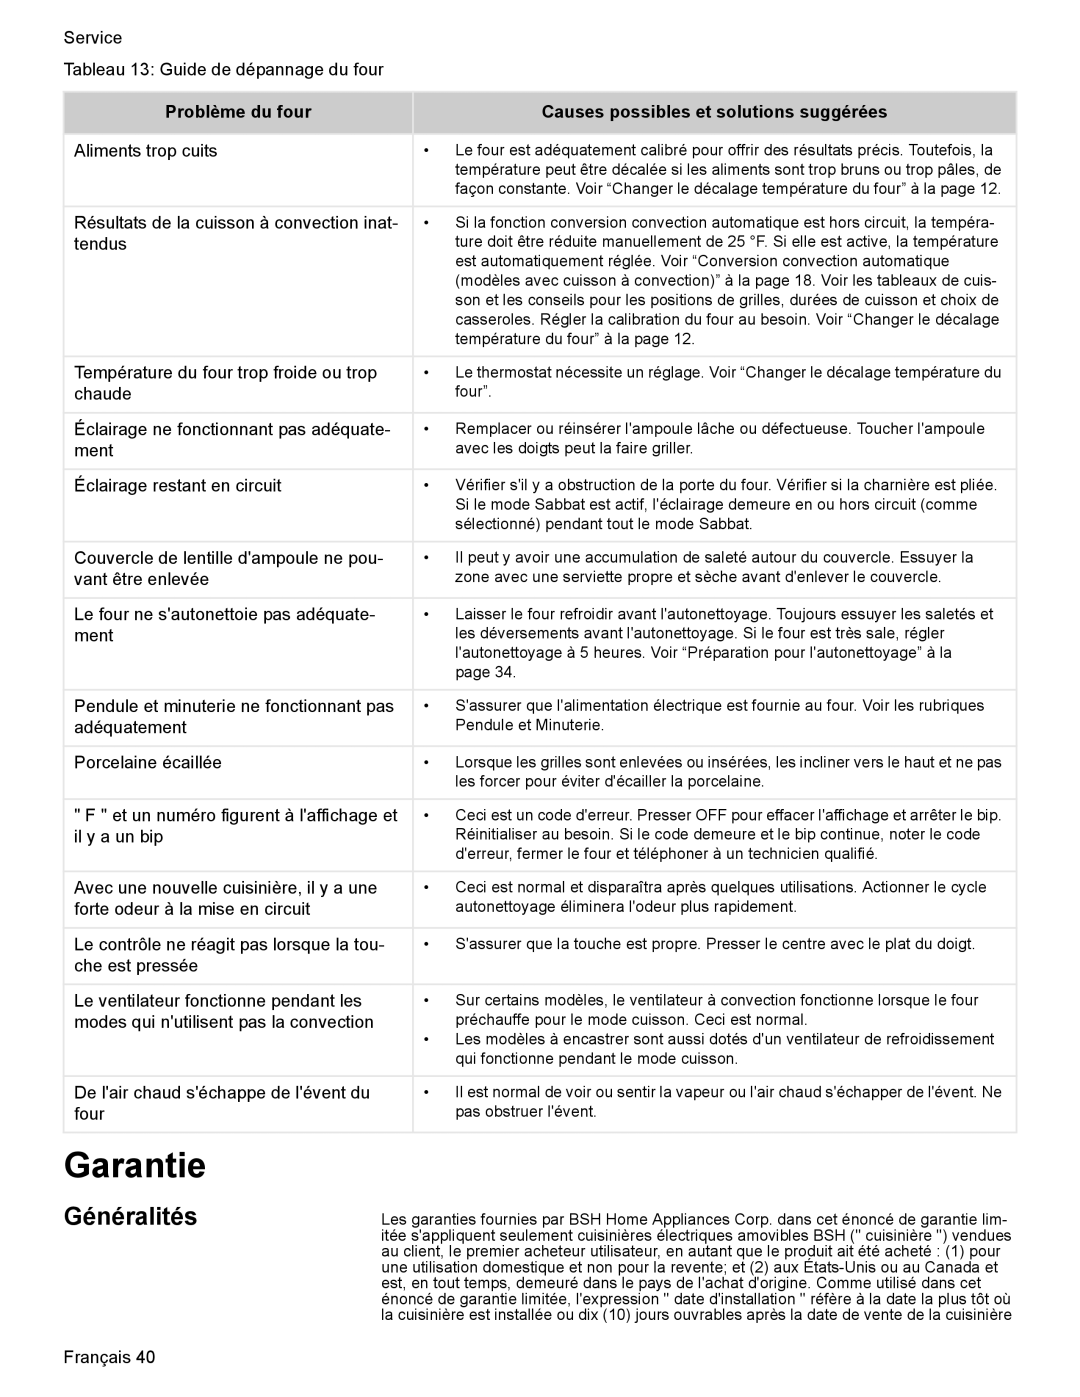 Bosch Appliances HES7052U manual Garantie, Généralités, Problème du four, Causes possibles et solutions suggérées 